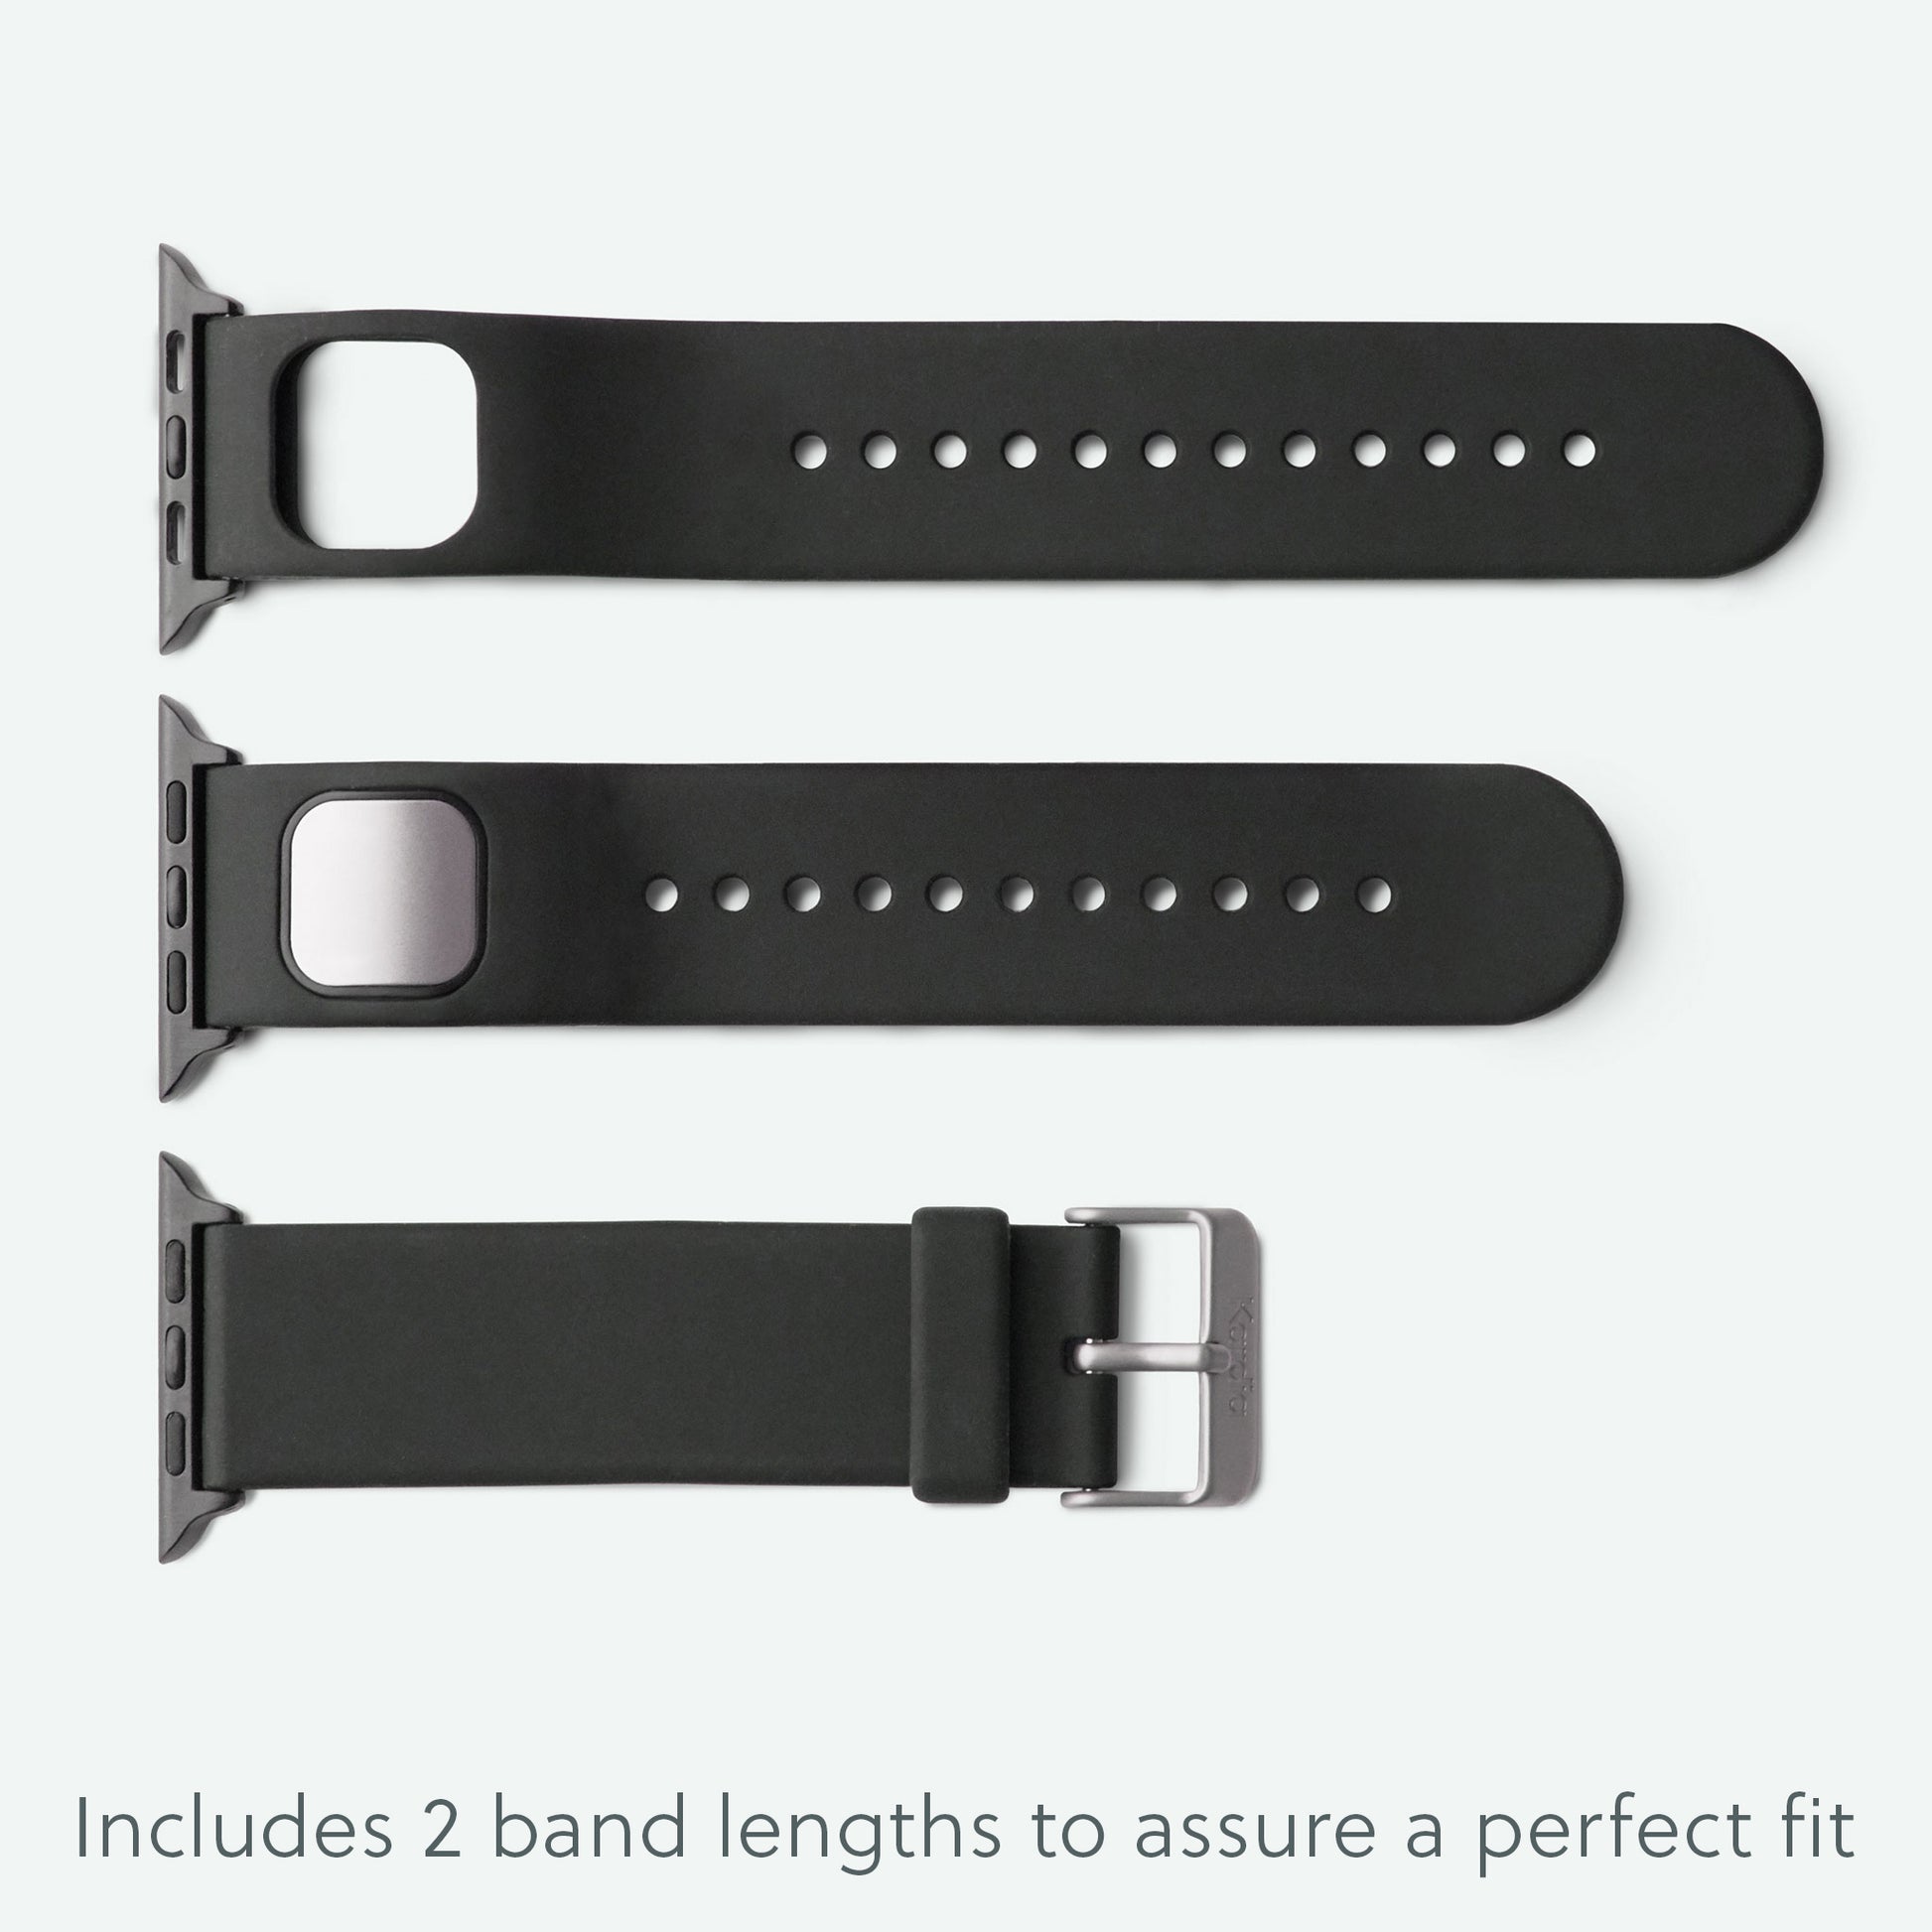 KardiaBand - EKG Band for Your Apple Watch®